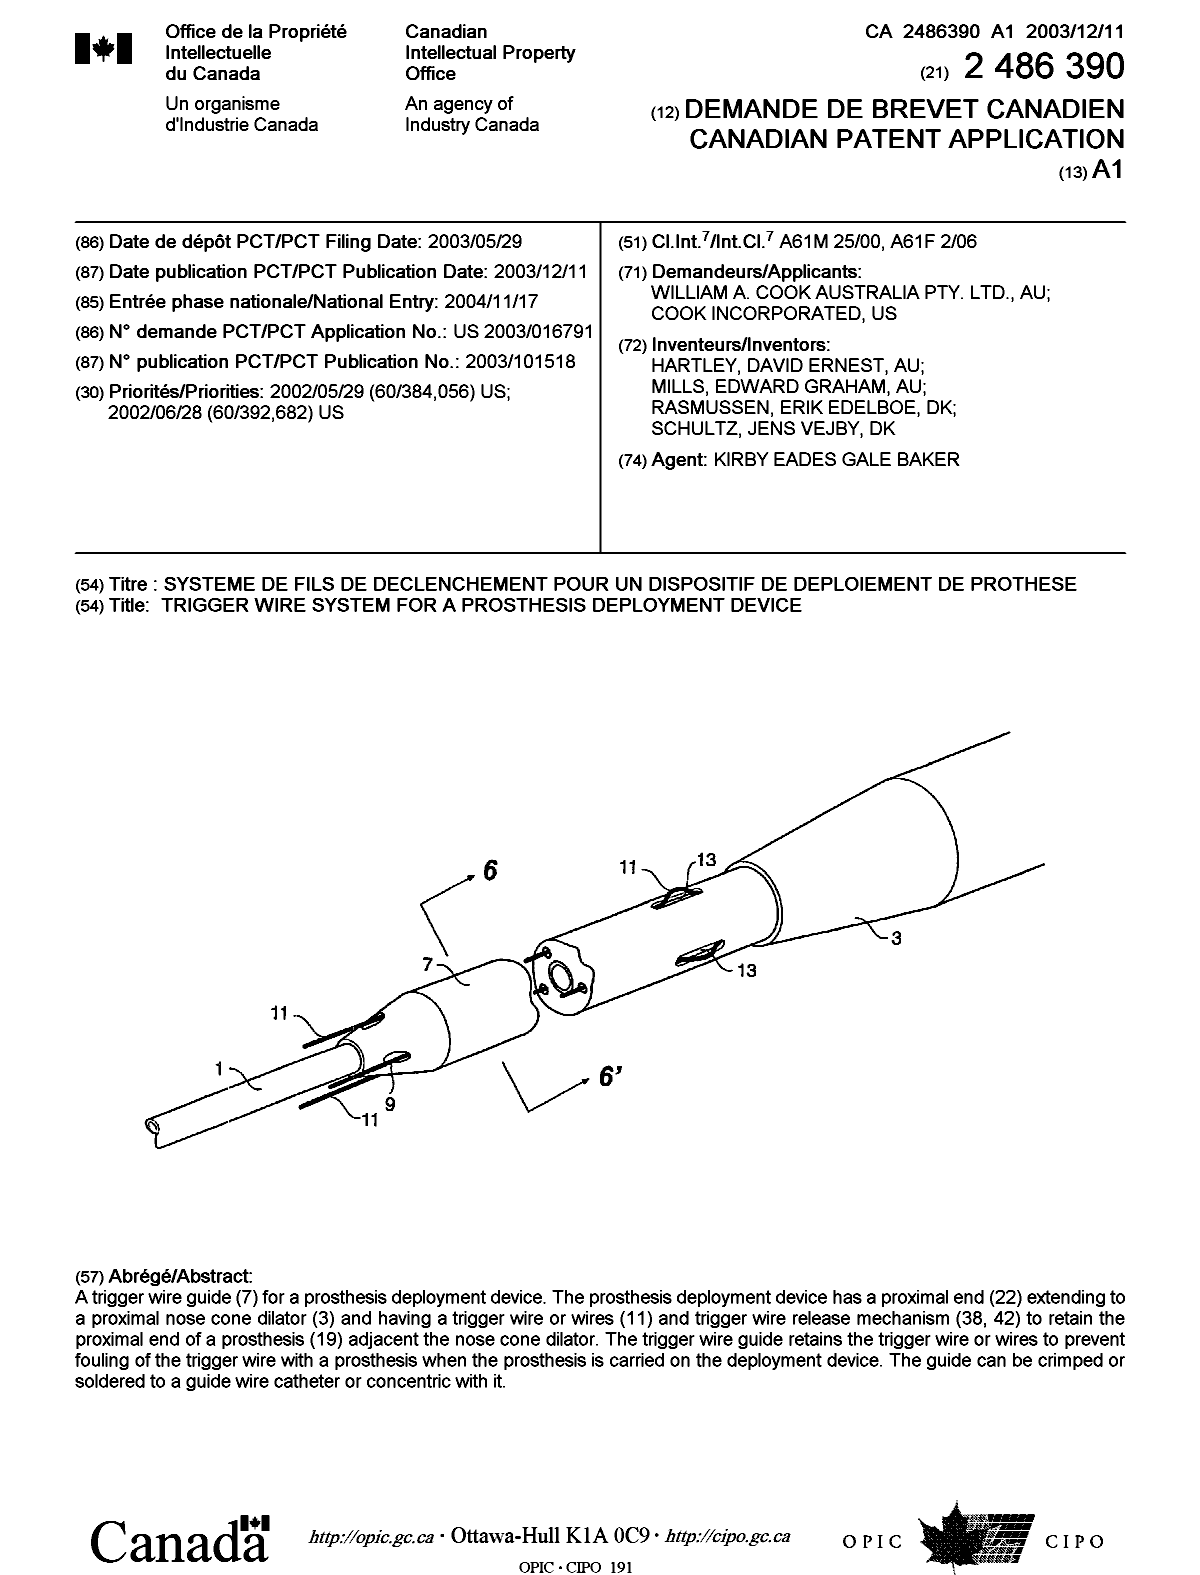 Document de brevet canadien 2486390. Page couverture 20050131. Image 1 de 1